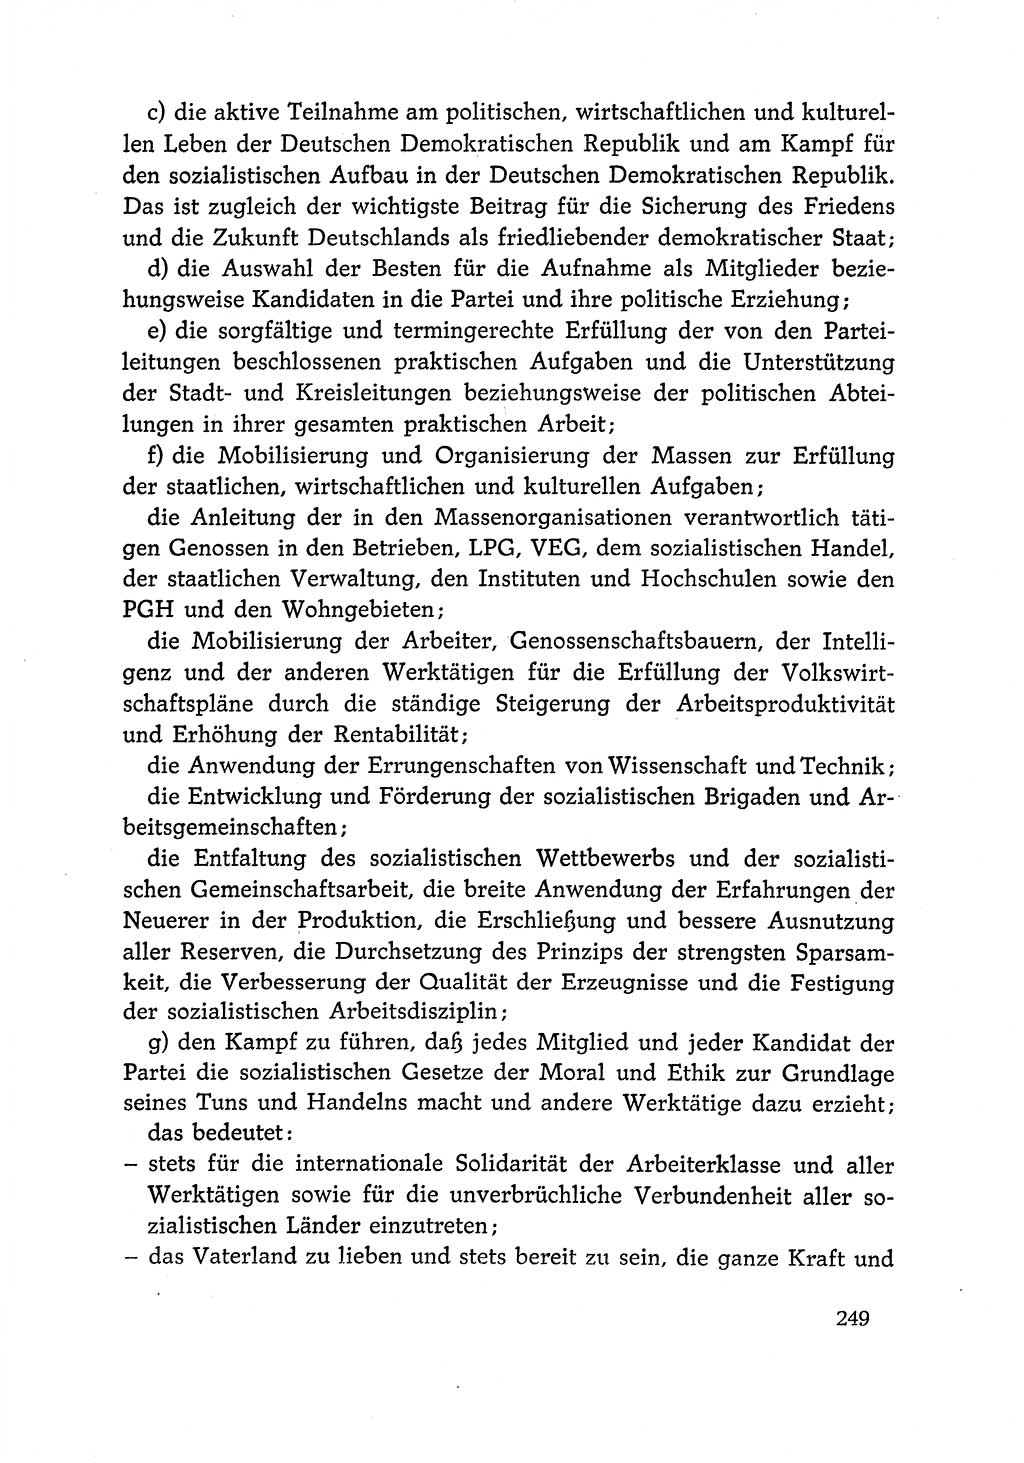 Dokumente der Sozialistischen Einheitspartei Deutschlands (SED) [Deutsche Demokratische Republik (DDR)] 1966-1967, Seite 249 (Dok. SED DDR 1966-1967, S. 249)